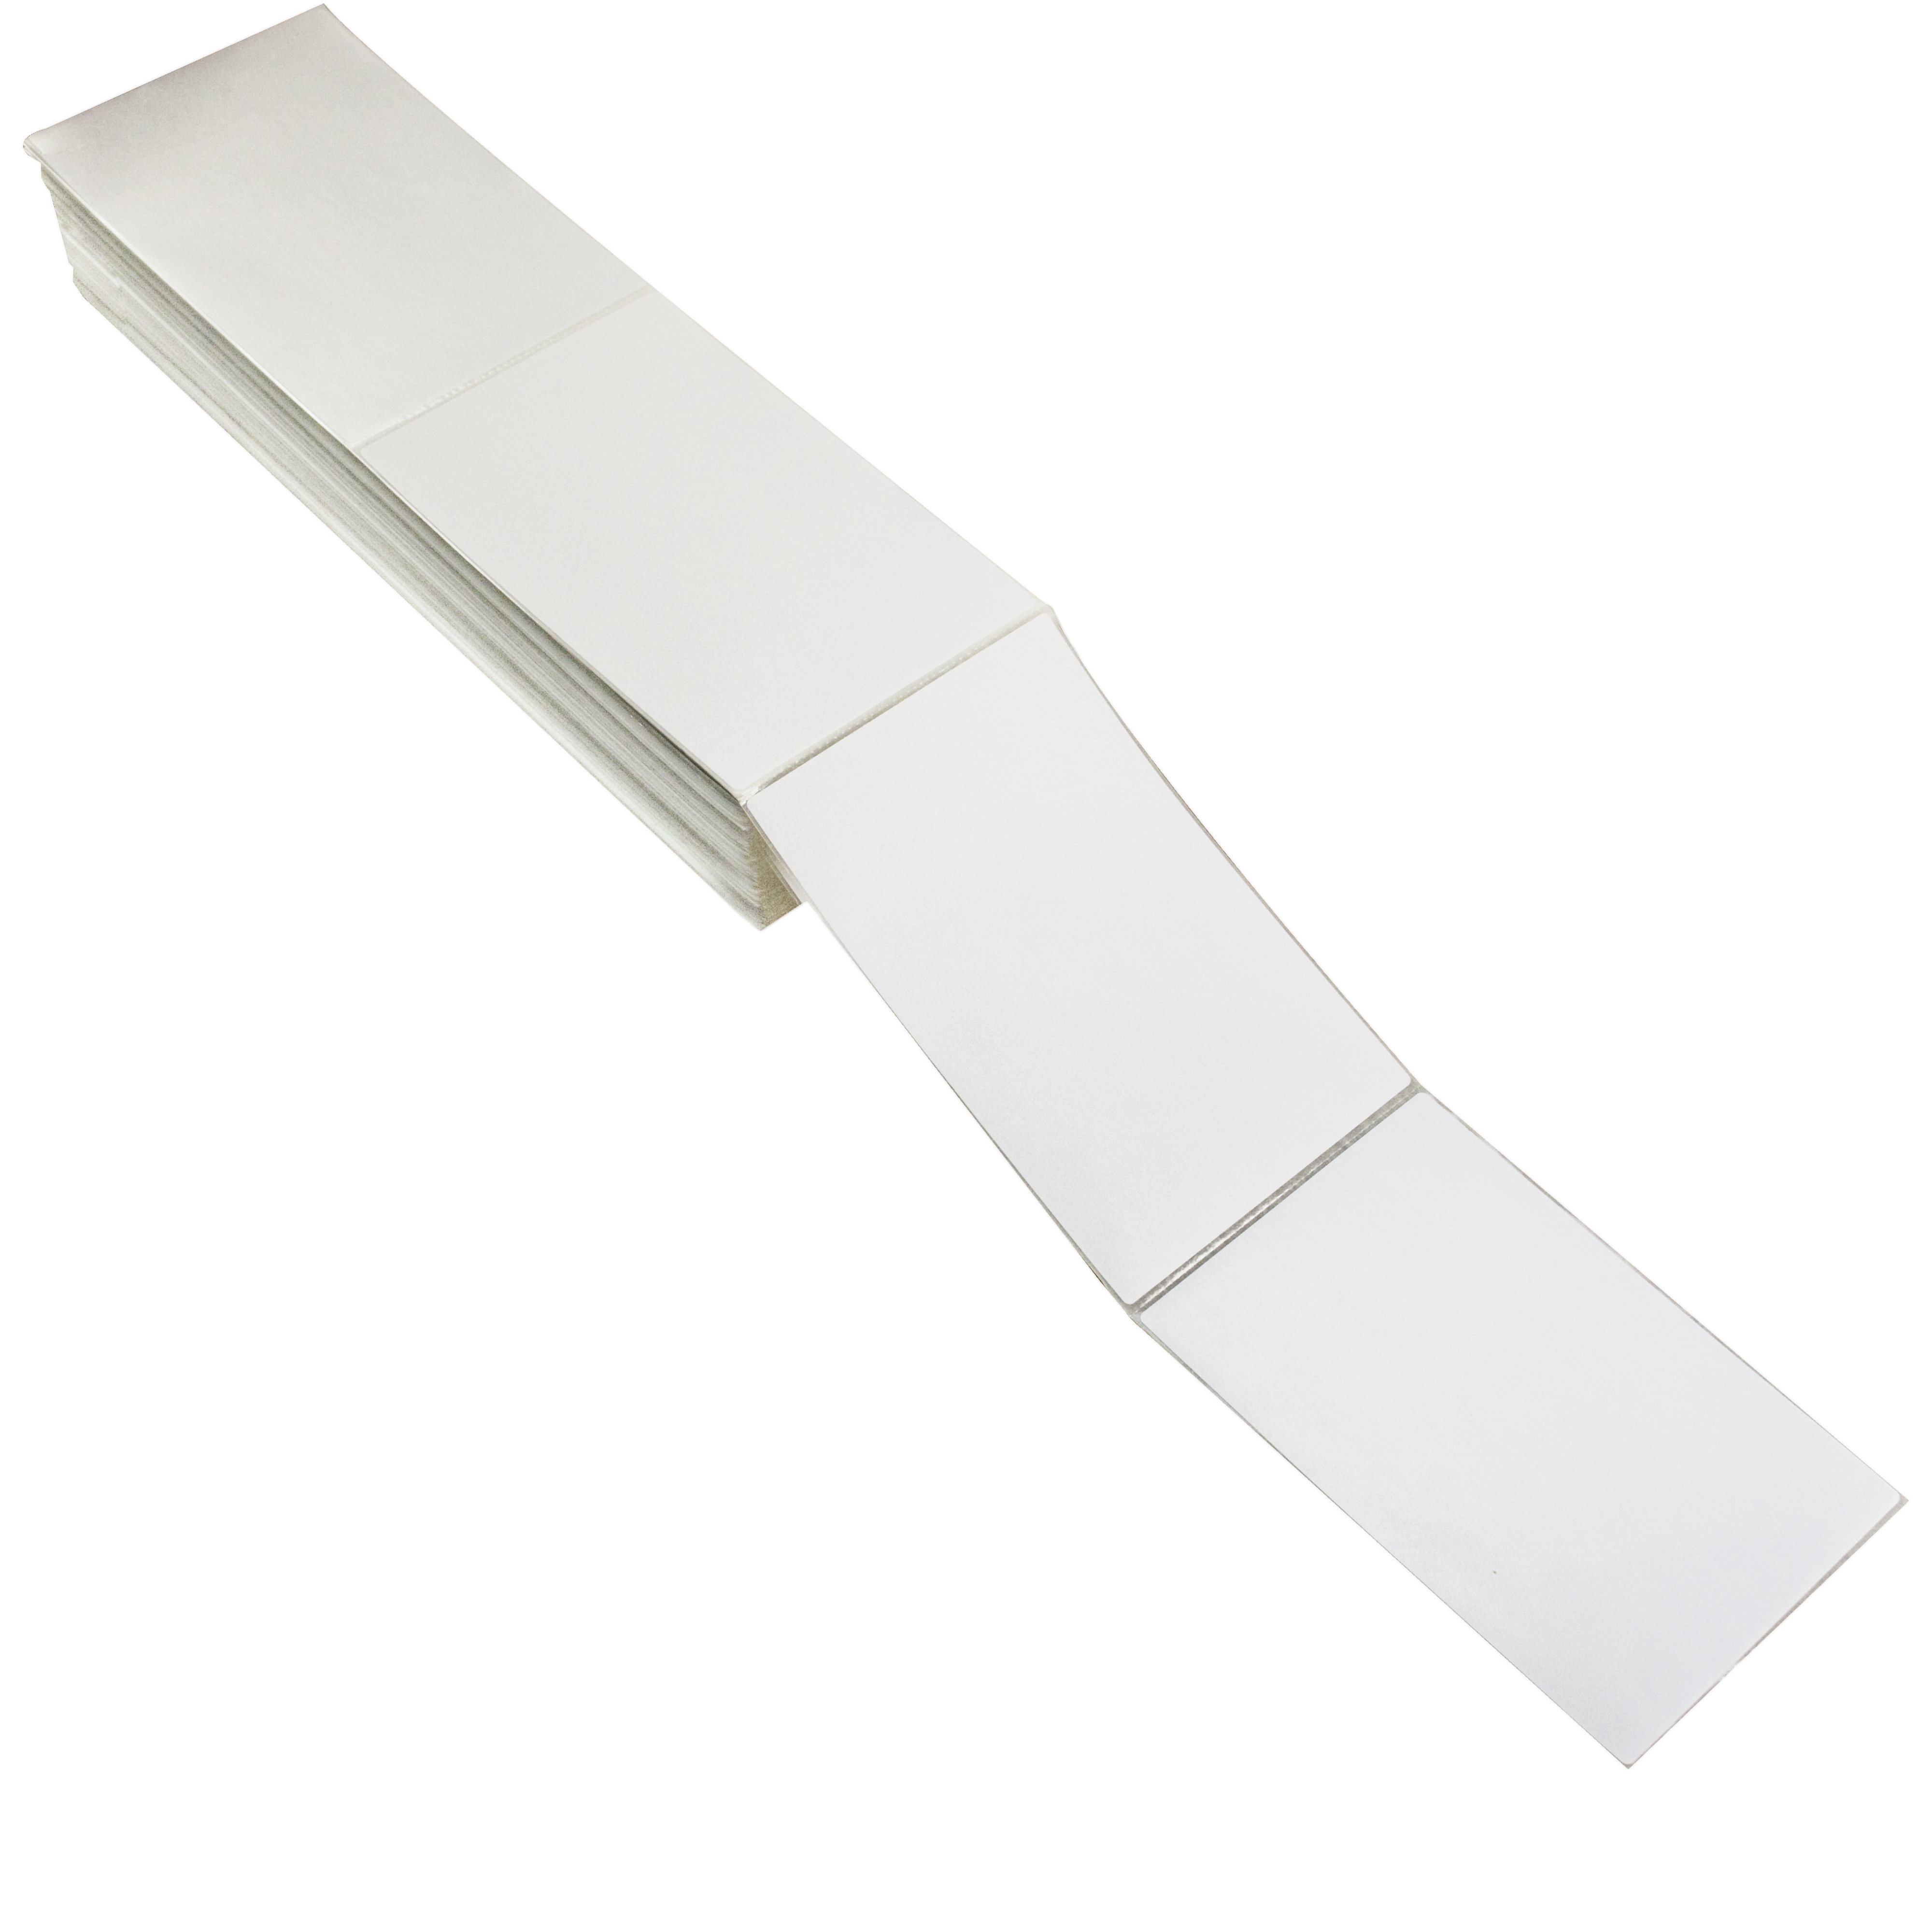 空白防水白色打印标签贴纸纸条码价格标签贴纸风扇折叠4x6直接热敏标签